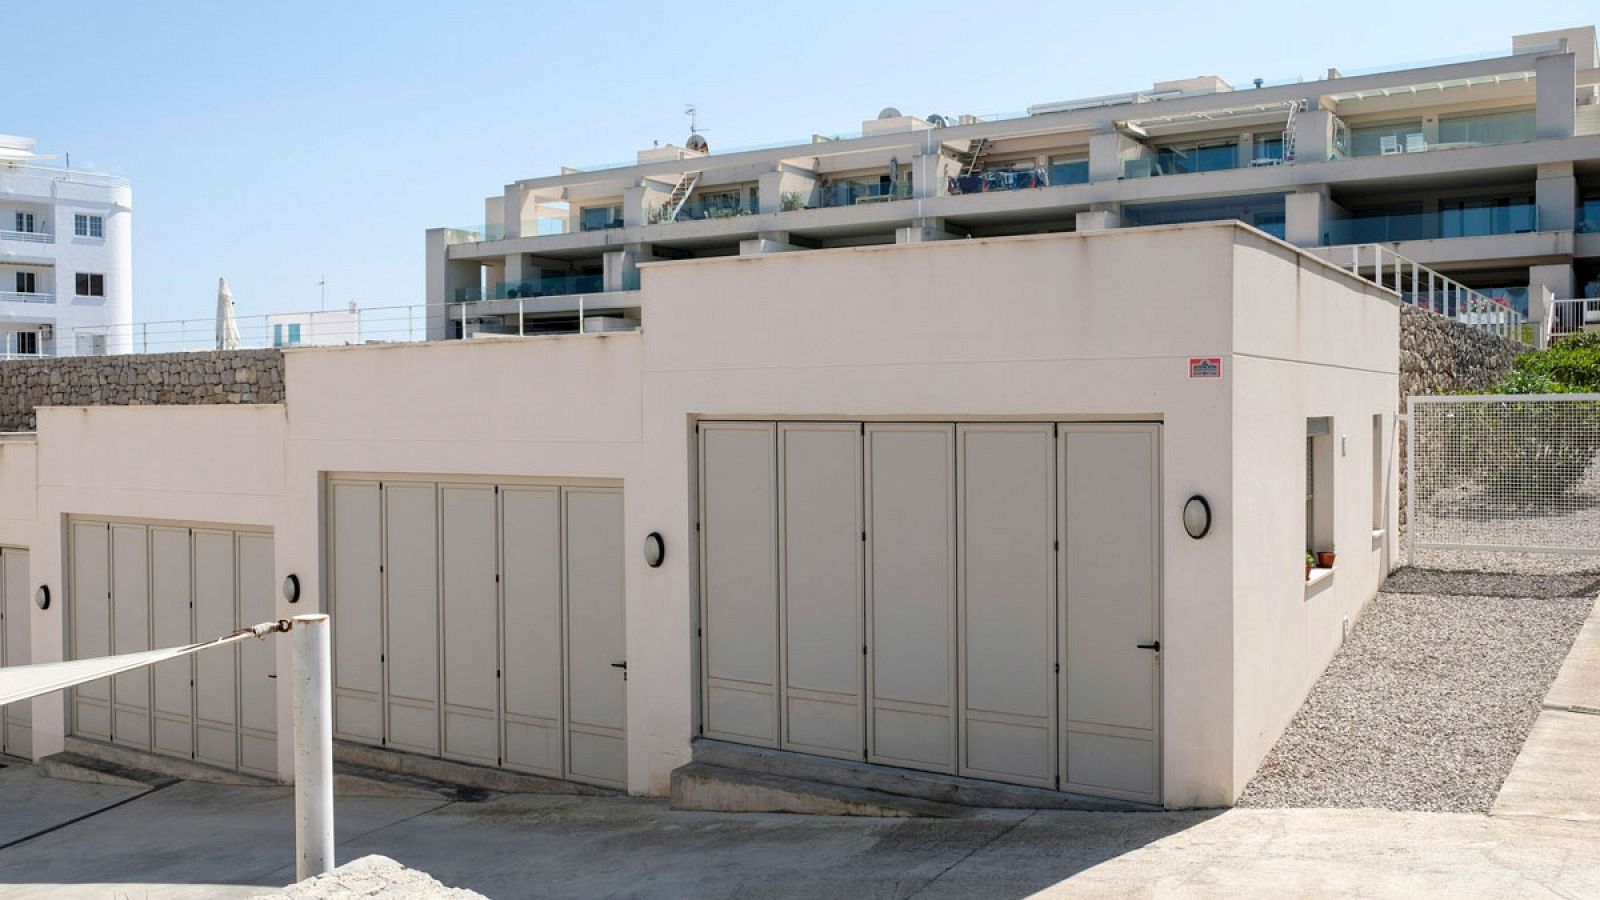 Trasteros reformados como viviendas para alquiler turístico o trabajadores de temporada en Ibiza